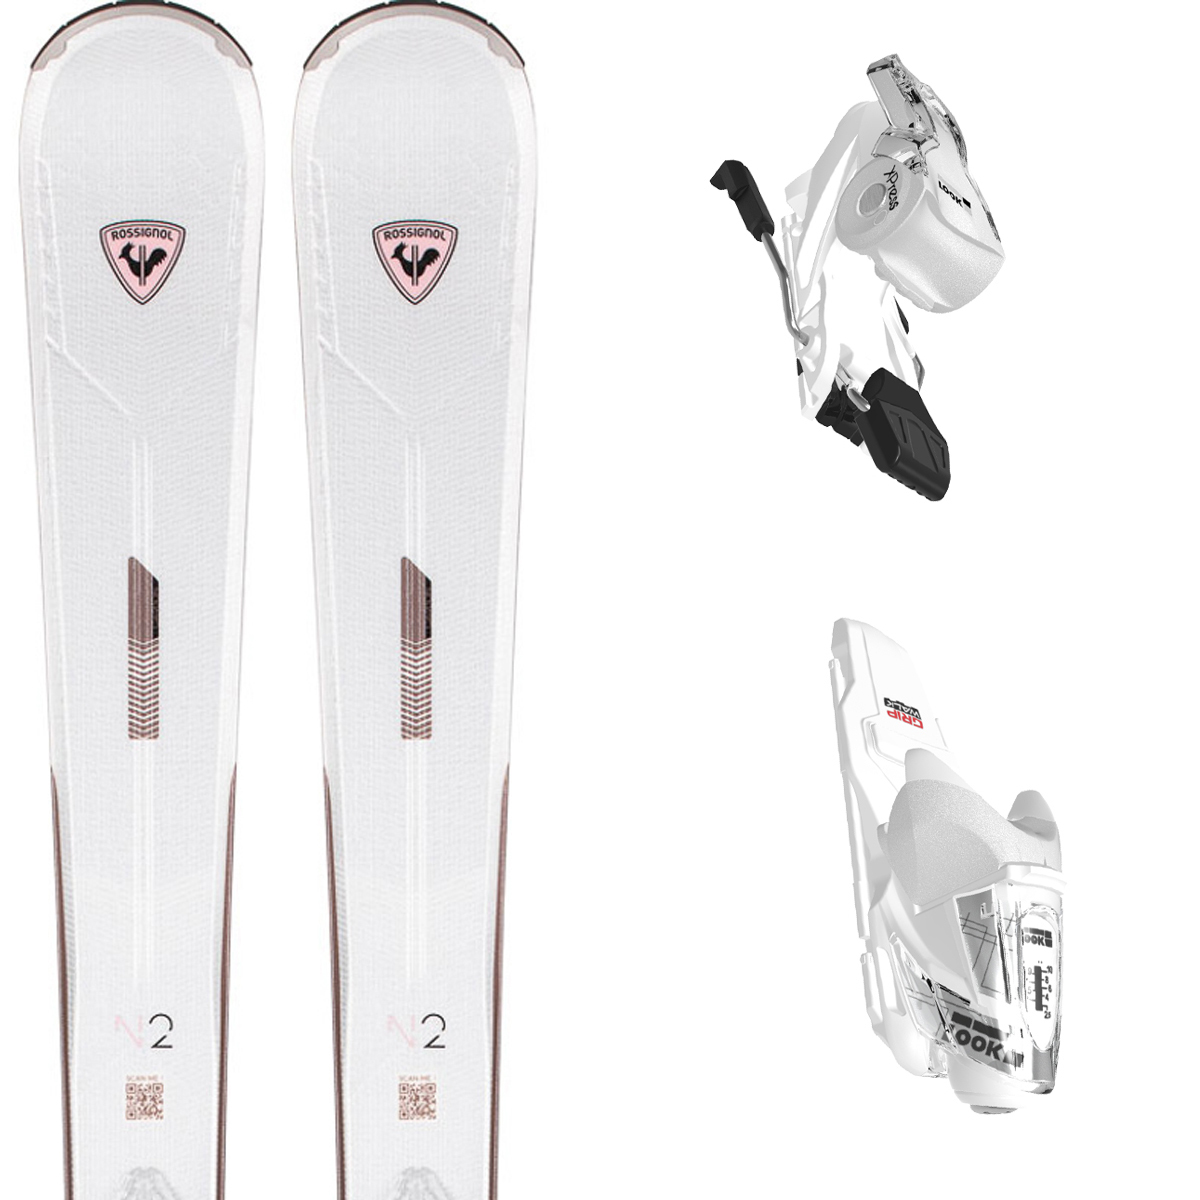 スキー セット 4点 メンズ レディース ROSSIGNOL スキー板 2022 REACT R2 XPRESS   XPRESS 10 GW B83  DALBELLO ブーツ DS ASOLO120GW   ストック